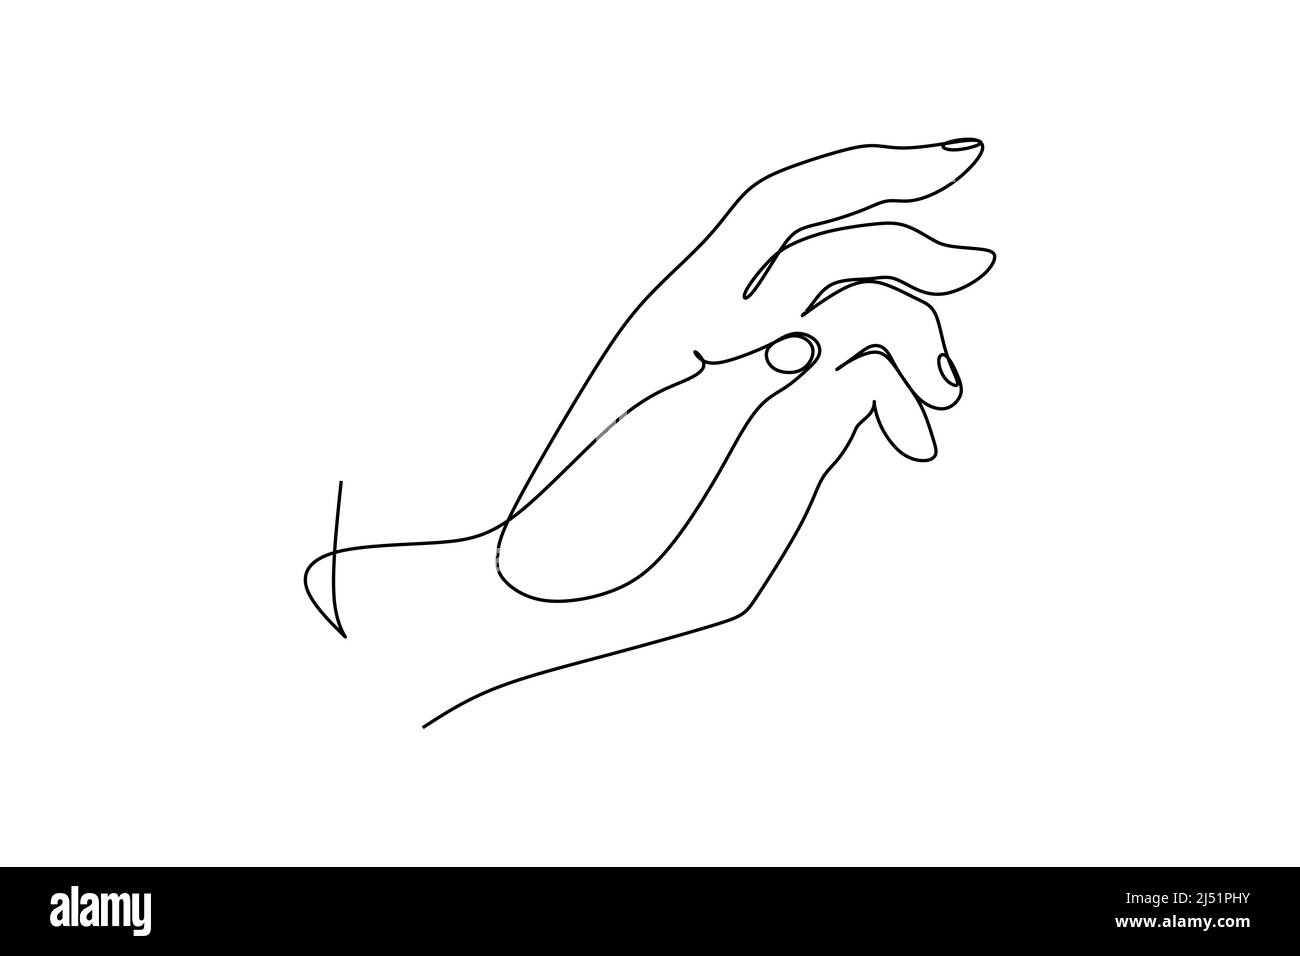 Ligne de main non peinte continue tracée à partir de la silhouette de l'image de la main. Illustration vectorielle de style dessin à la main Illustration de Vecteur